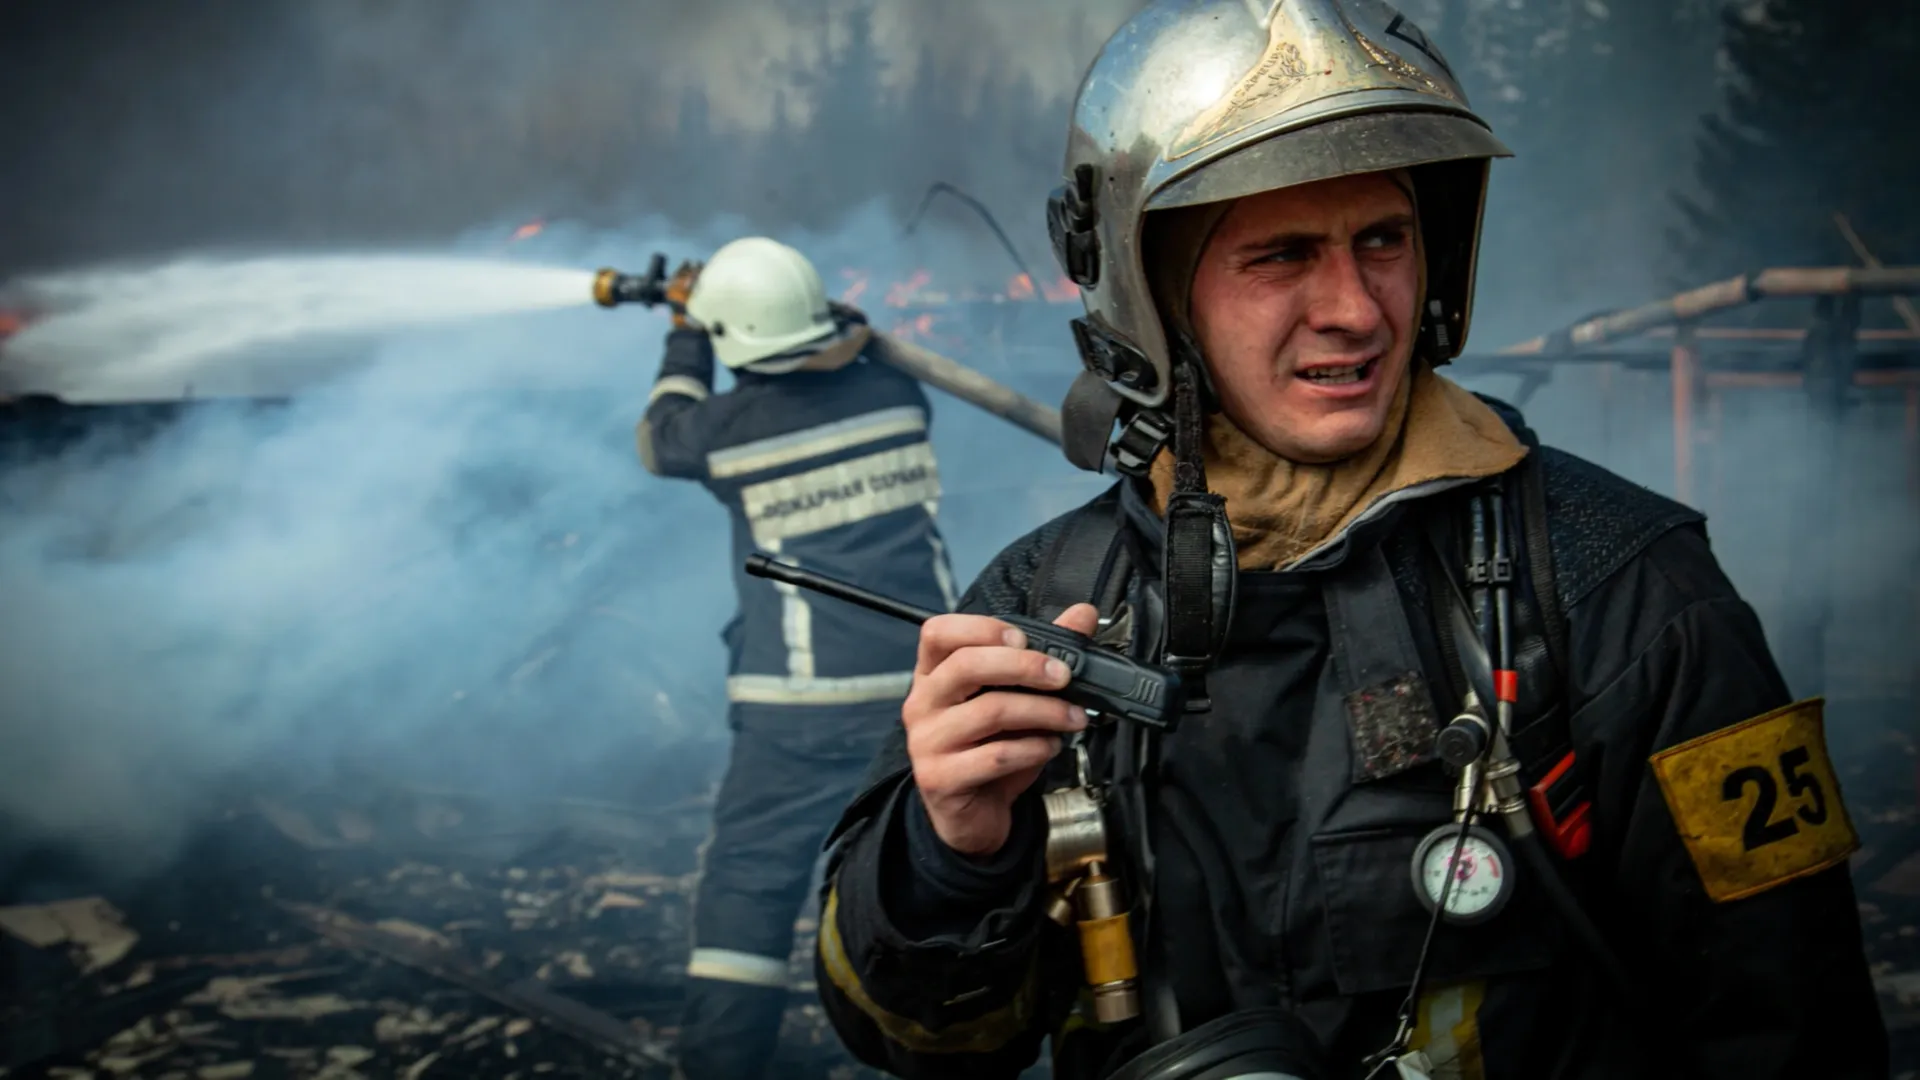 Пожарные Ямала будут получать региональные надбавки. Фото предоставлено Александром Верховодовым